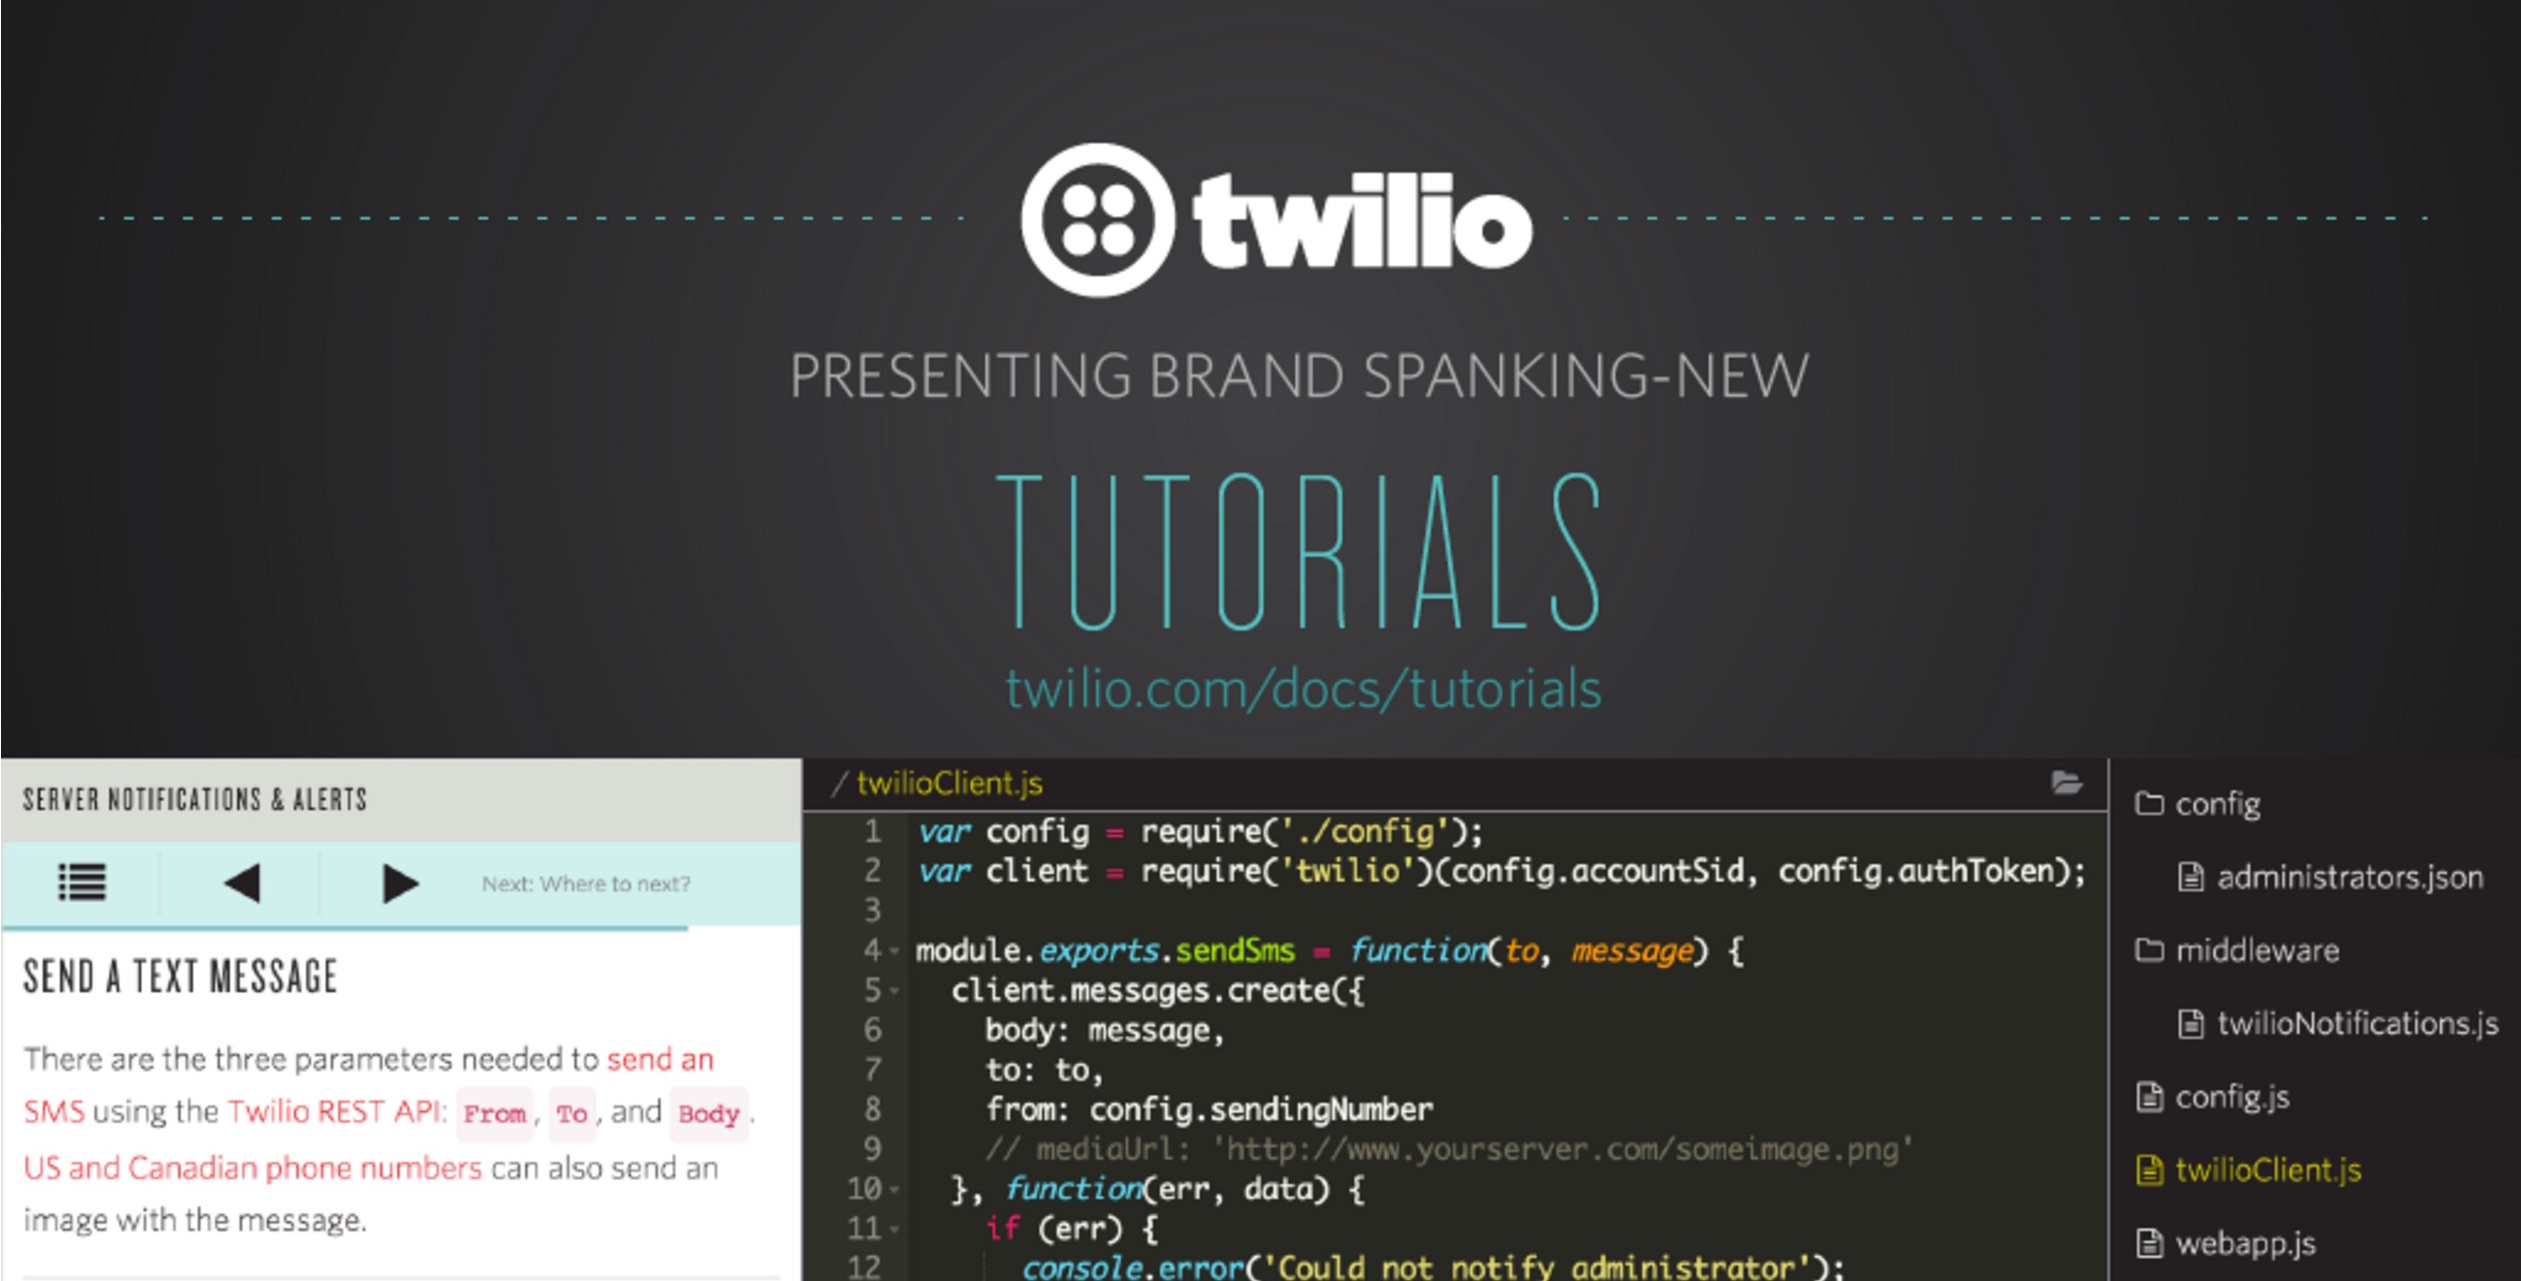 Tutorials by Twilio launch blog post slide